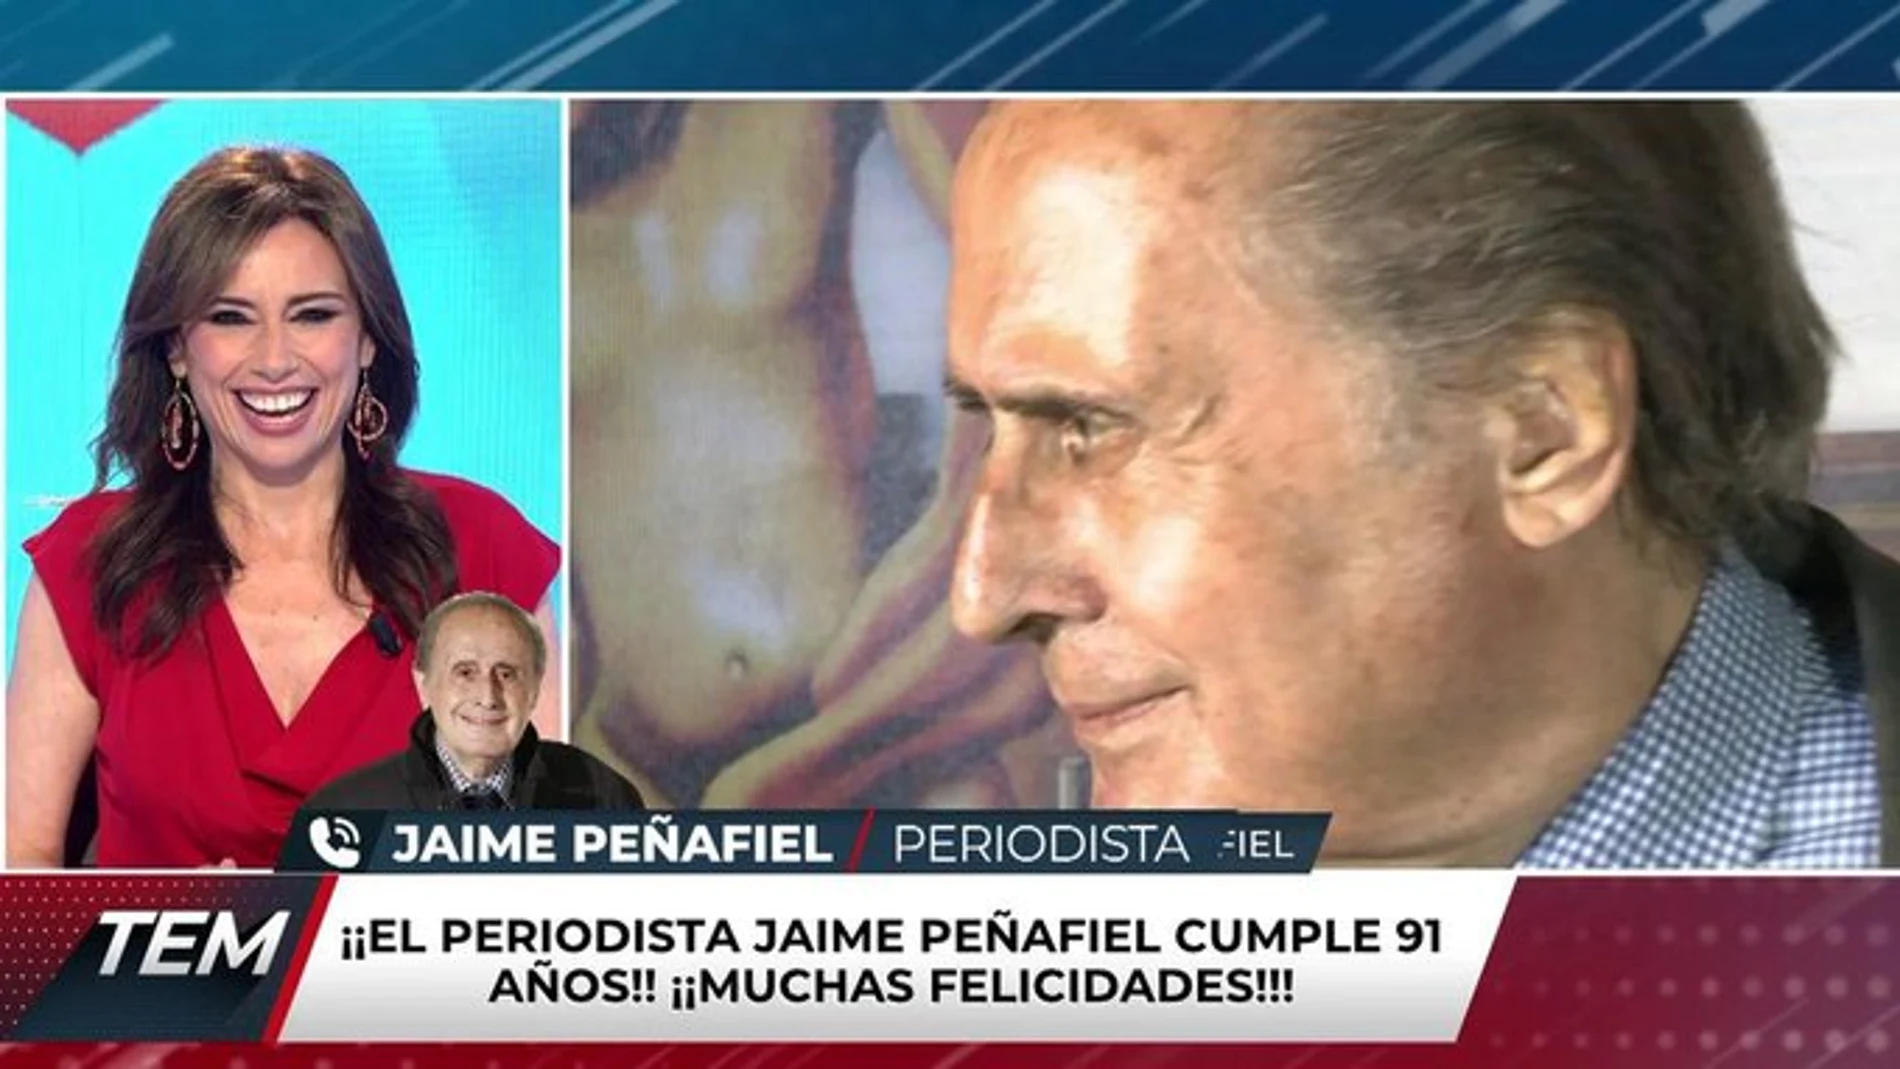 Jaime Peñafiel en su 91º cumpleaños: "Mi secreto es hacer el amor a diario"